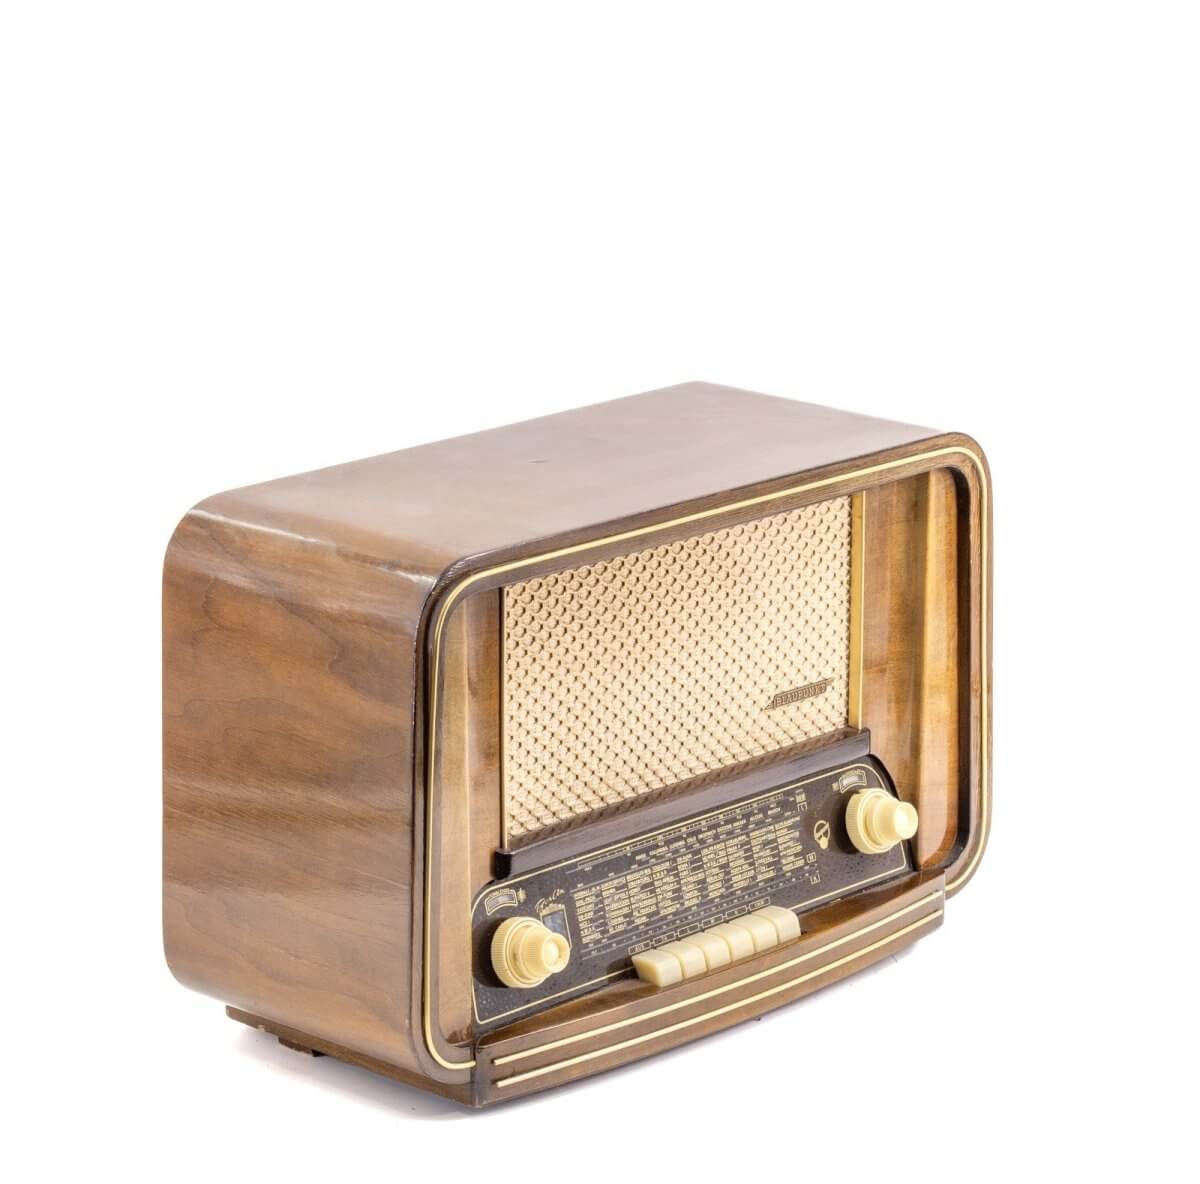 Radio Bluetooth Blaupunkt Vintage 50’S enceinte connectée française haut de gamme prodige radio vintage